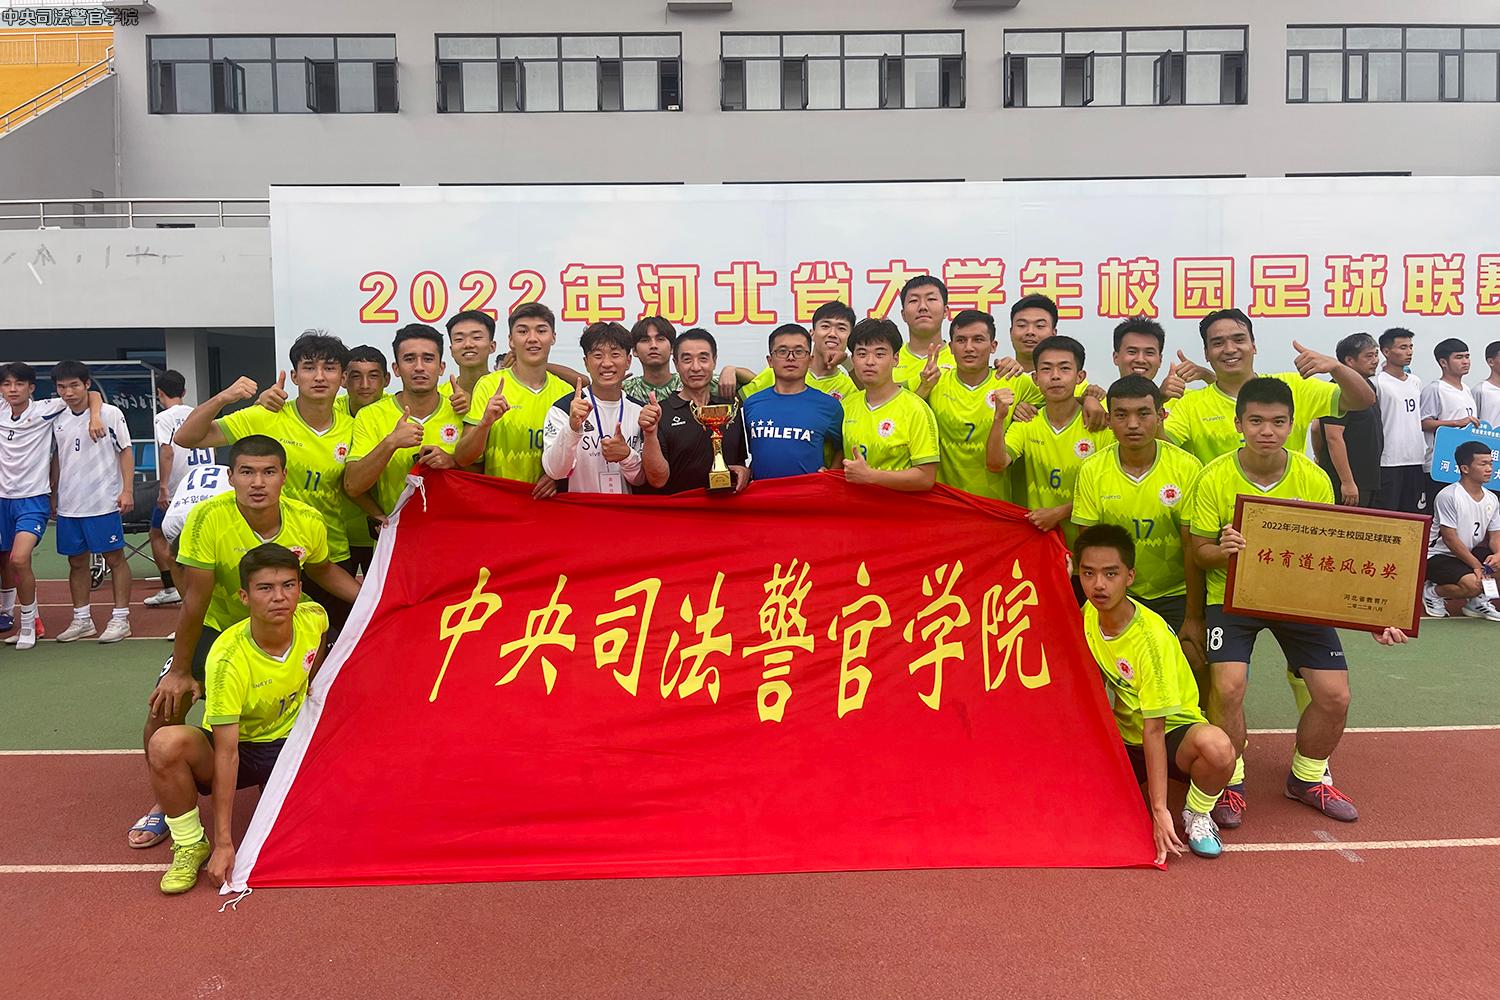 勇于拼搏 敢于胜利——我校男子足球队获得2022年河北省大学生校园足球联赛冠军